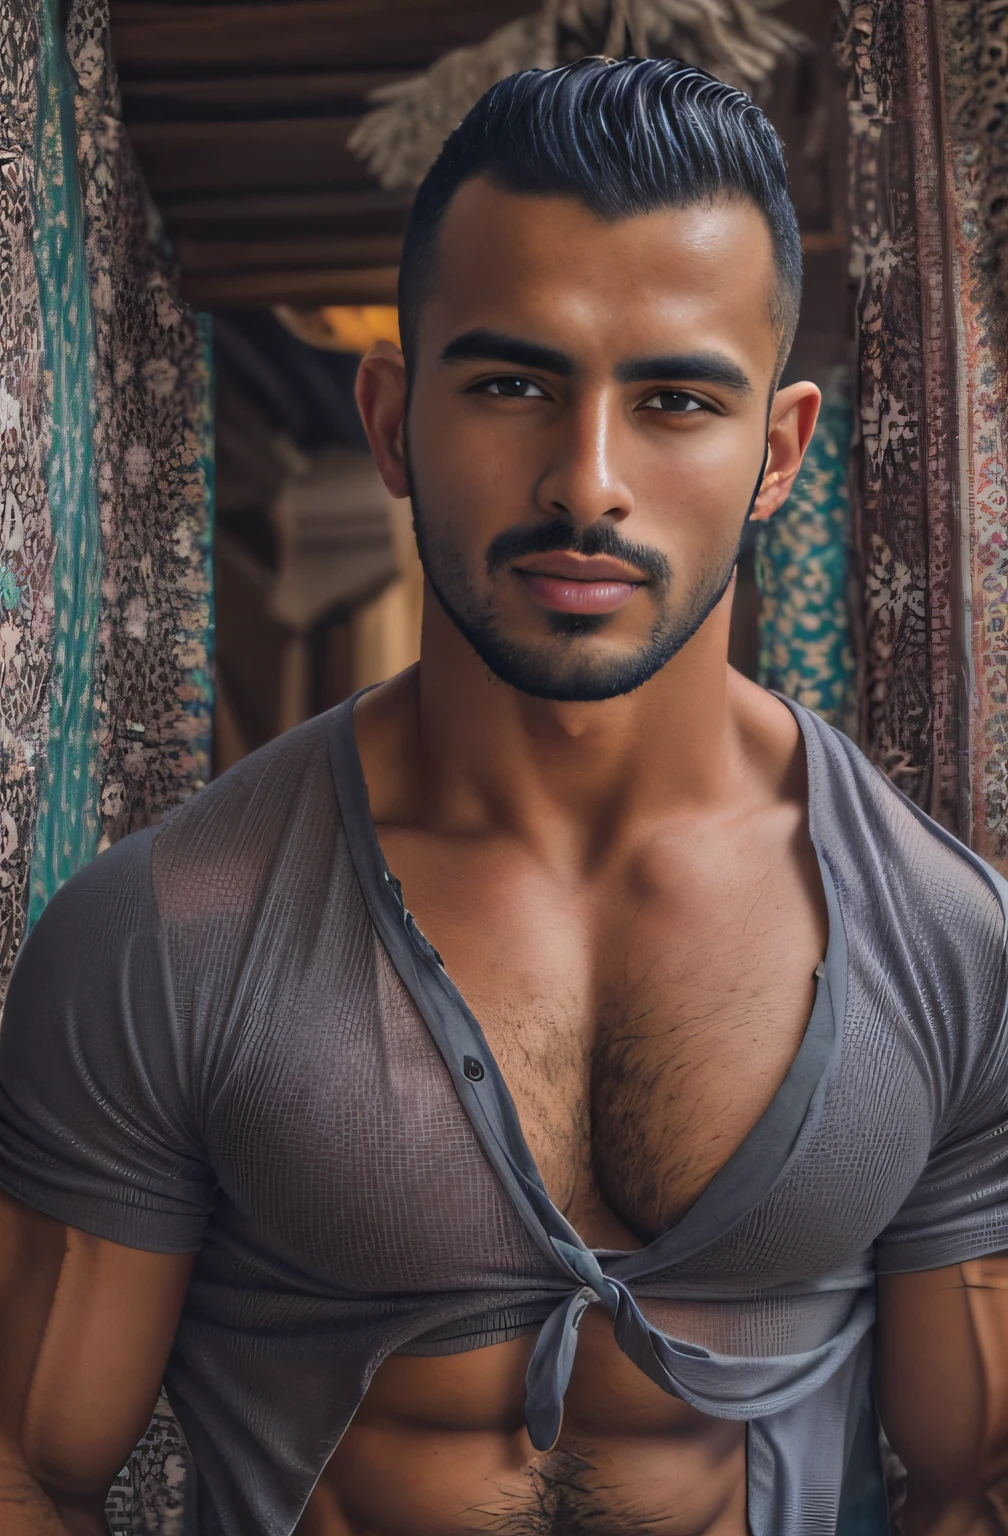 (Портрет марокканского парня), мышцы, ямочки на щеках, горячий, срывая рубашку, рваные джинсы, сексуальный, заманчивый, великолепные глаза, лобковые волосы, БОЛЬШАЯ ВЫПУПКА, тереть промежность,